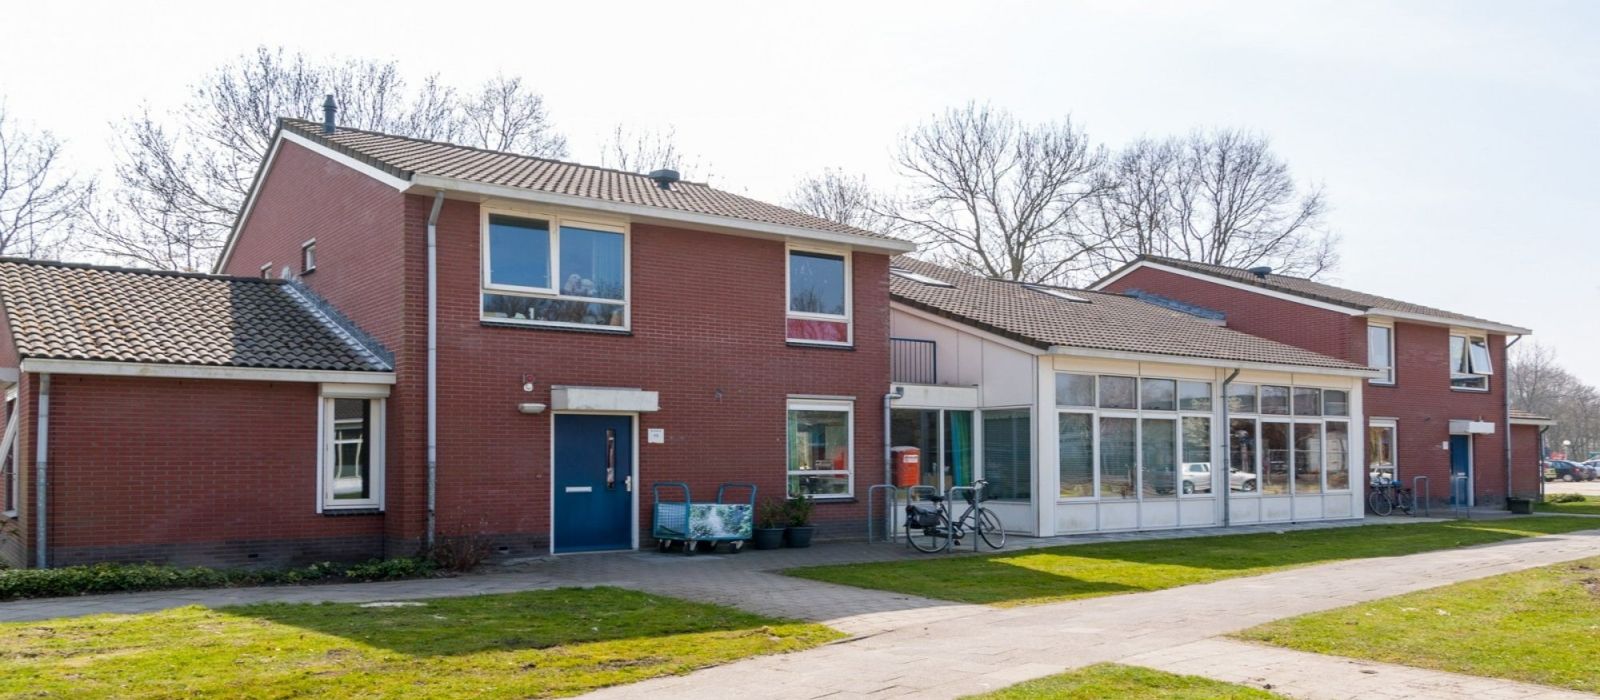 Woning woonlocatie Voorstraat 13-15 in Nootdorp